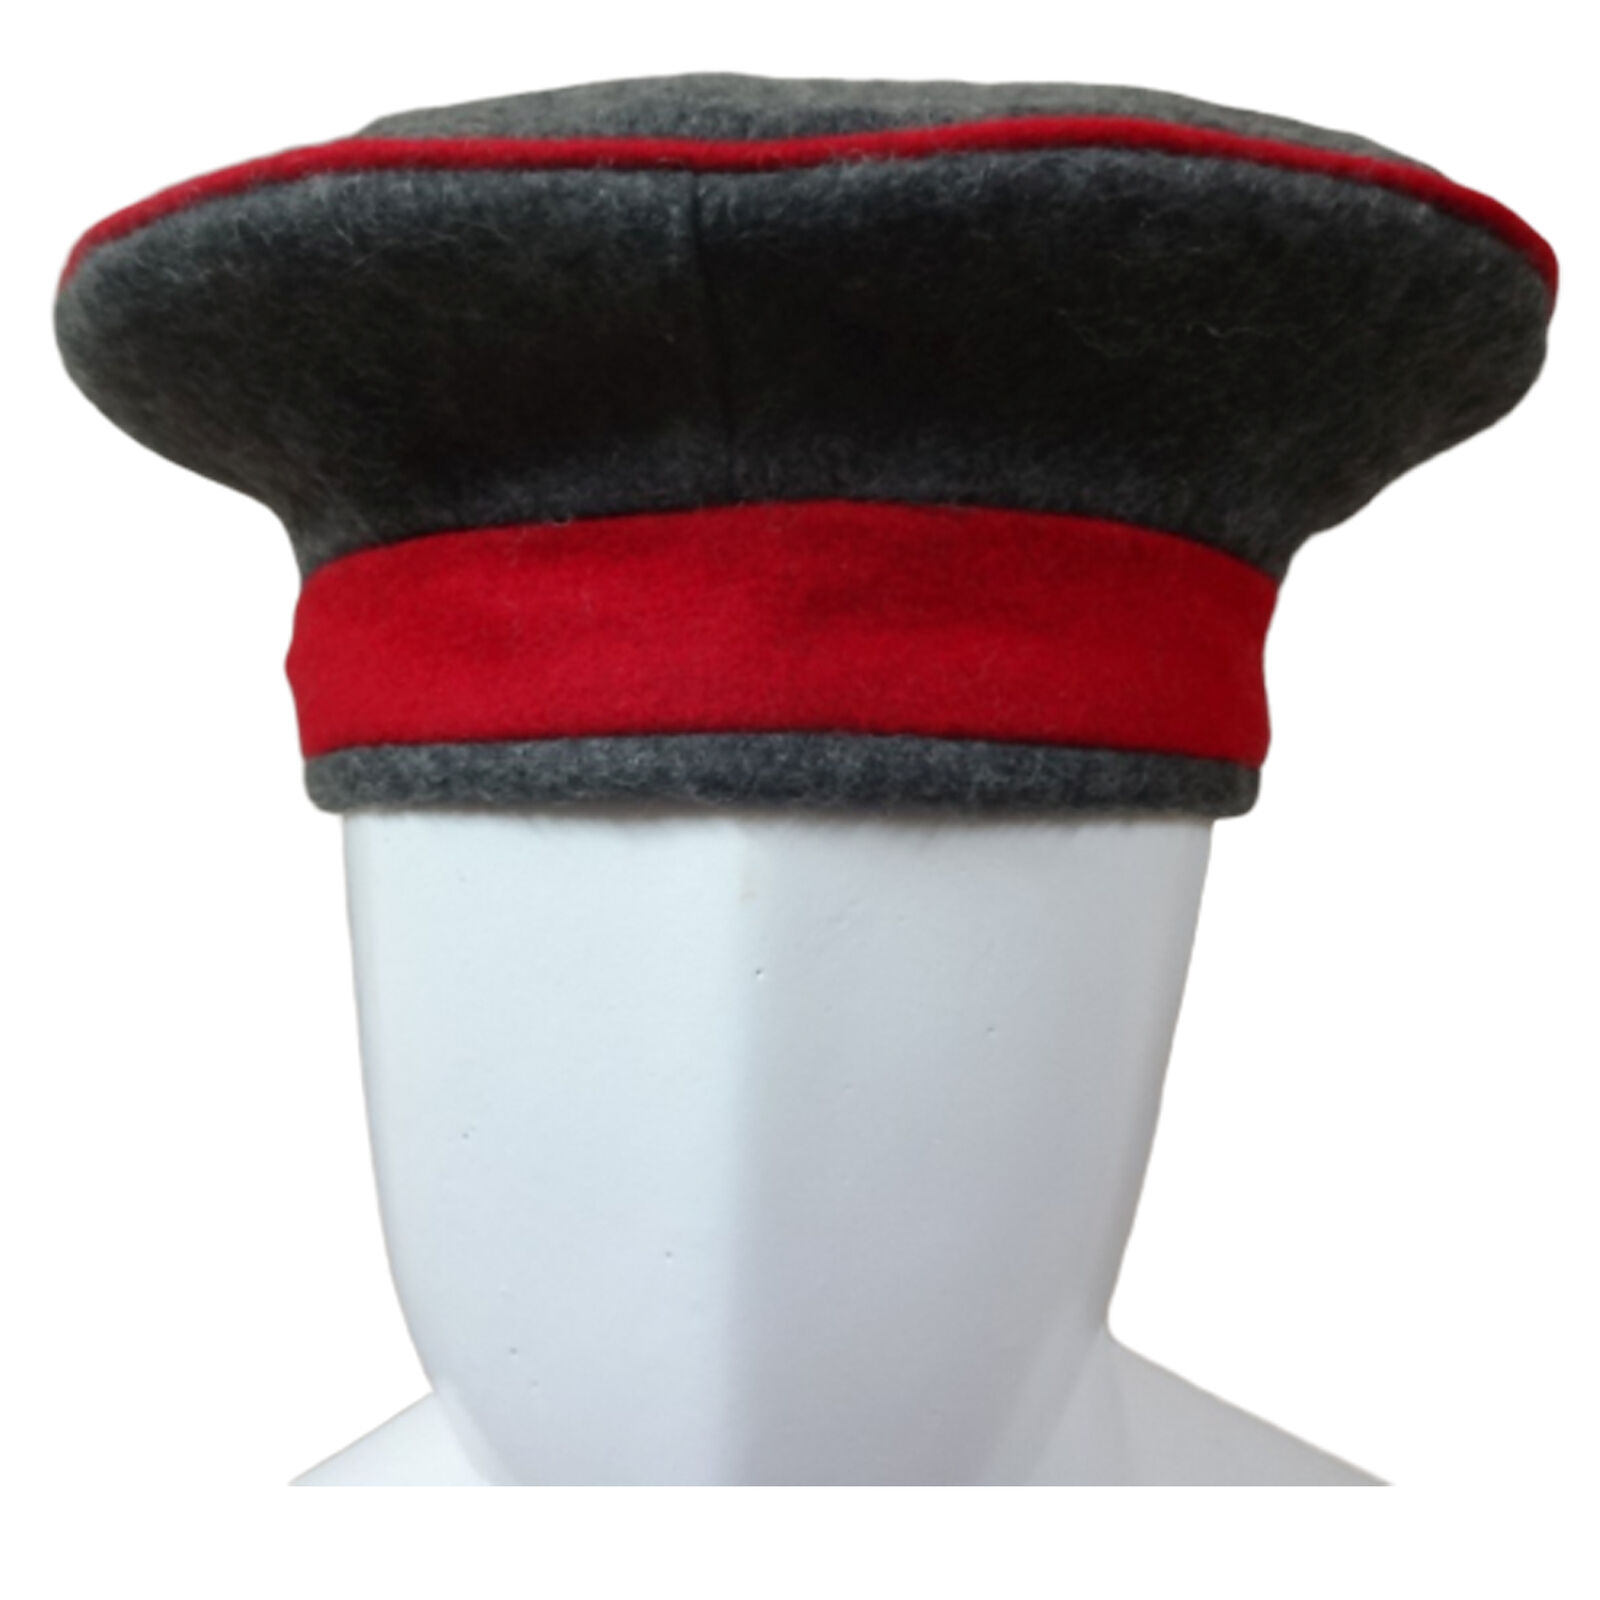 Kratzchen Field Cap M10/Monarchy Empire Uniform Cap Size 58cm (US Size 7.25) K70